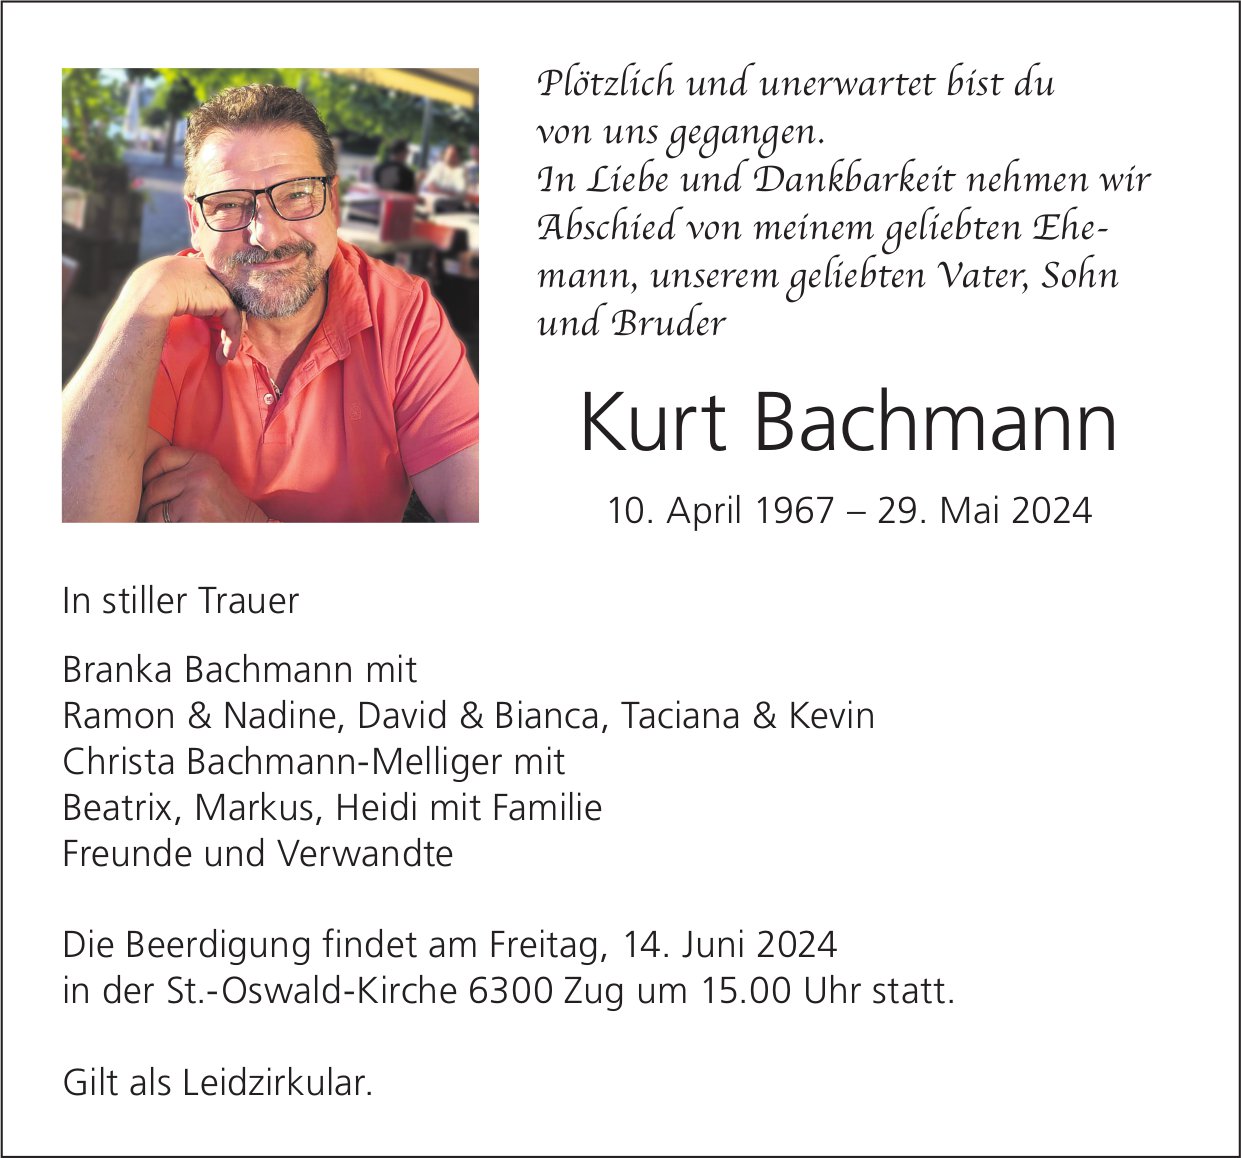 Bachmann Kurt, Mai 2024 / TA